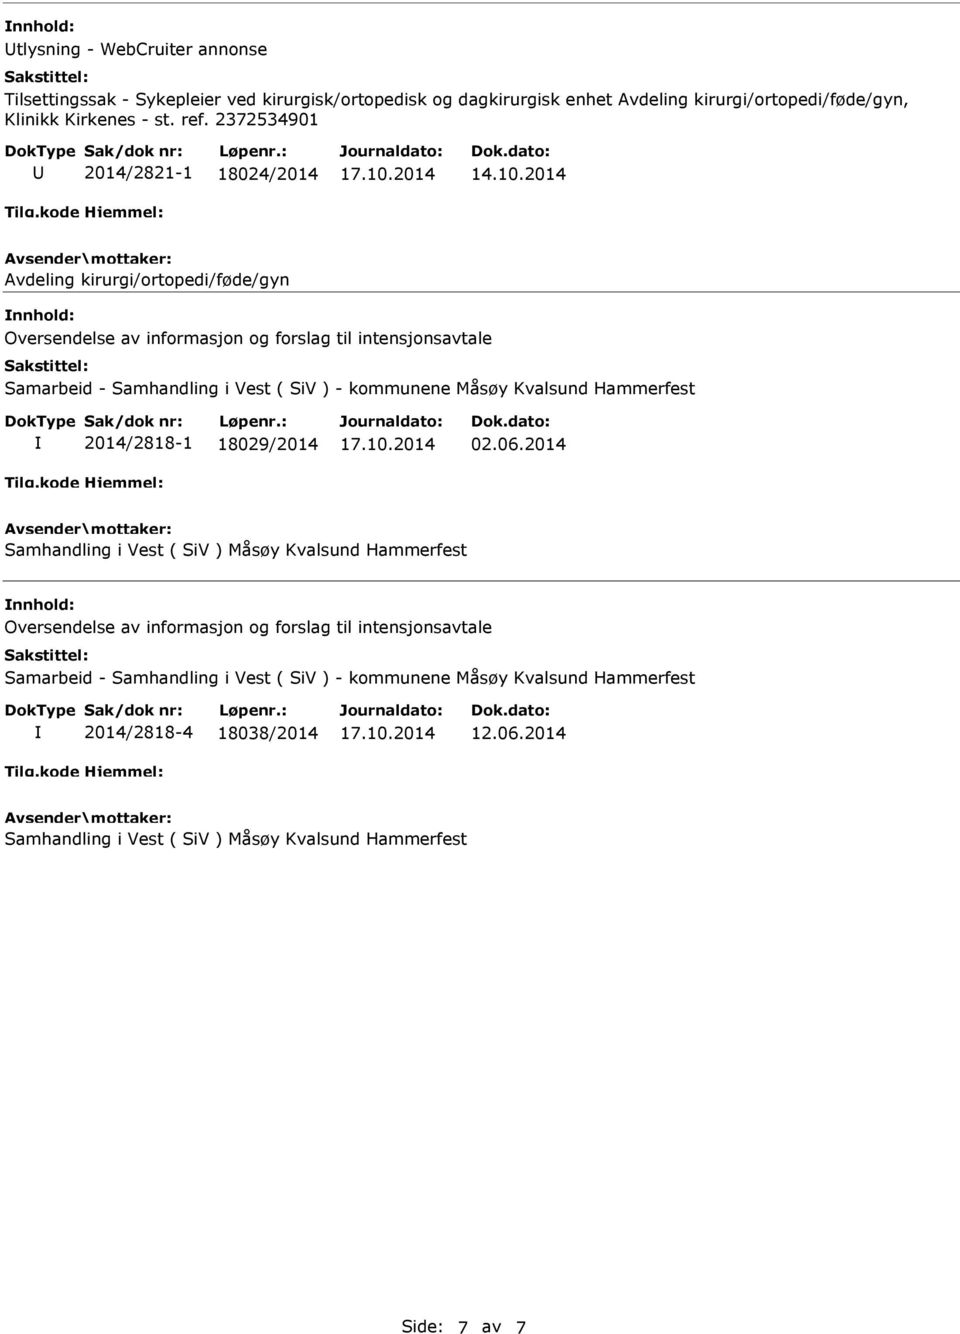 2014 Avdeling kirurgi/ortopedi/føde/gyn Oversendelse av informasjon og forslag til intensjonsavtale Samarbeid - Samhandling i Vest ( SiV ) - kommunene Måsøy Kvalsund Hammerfest